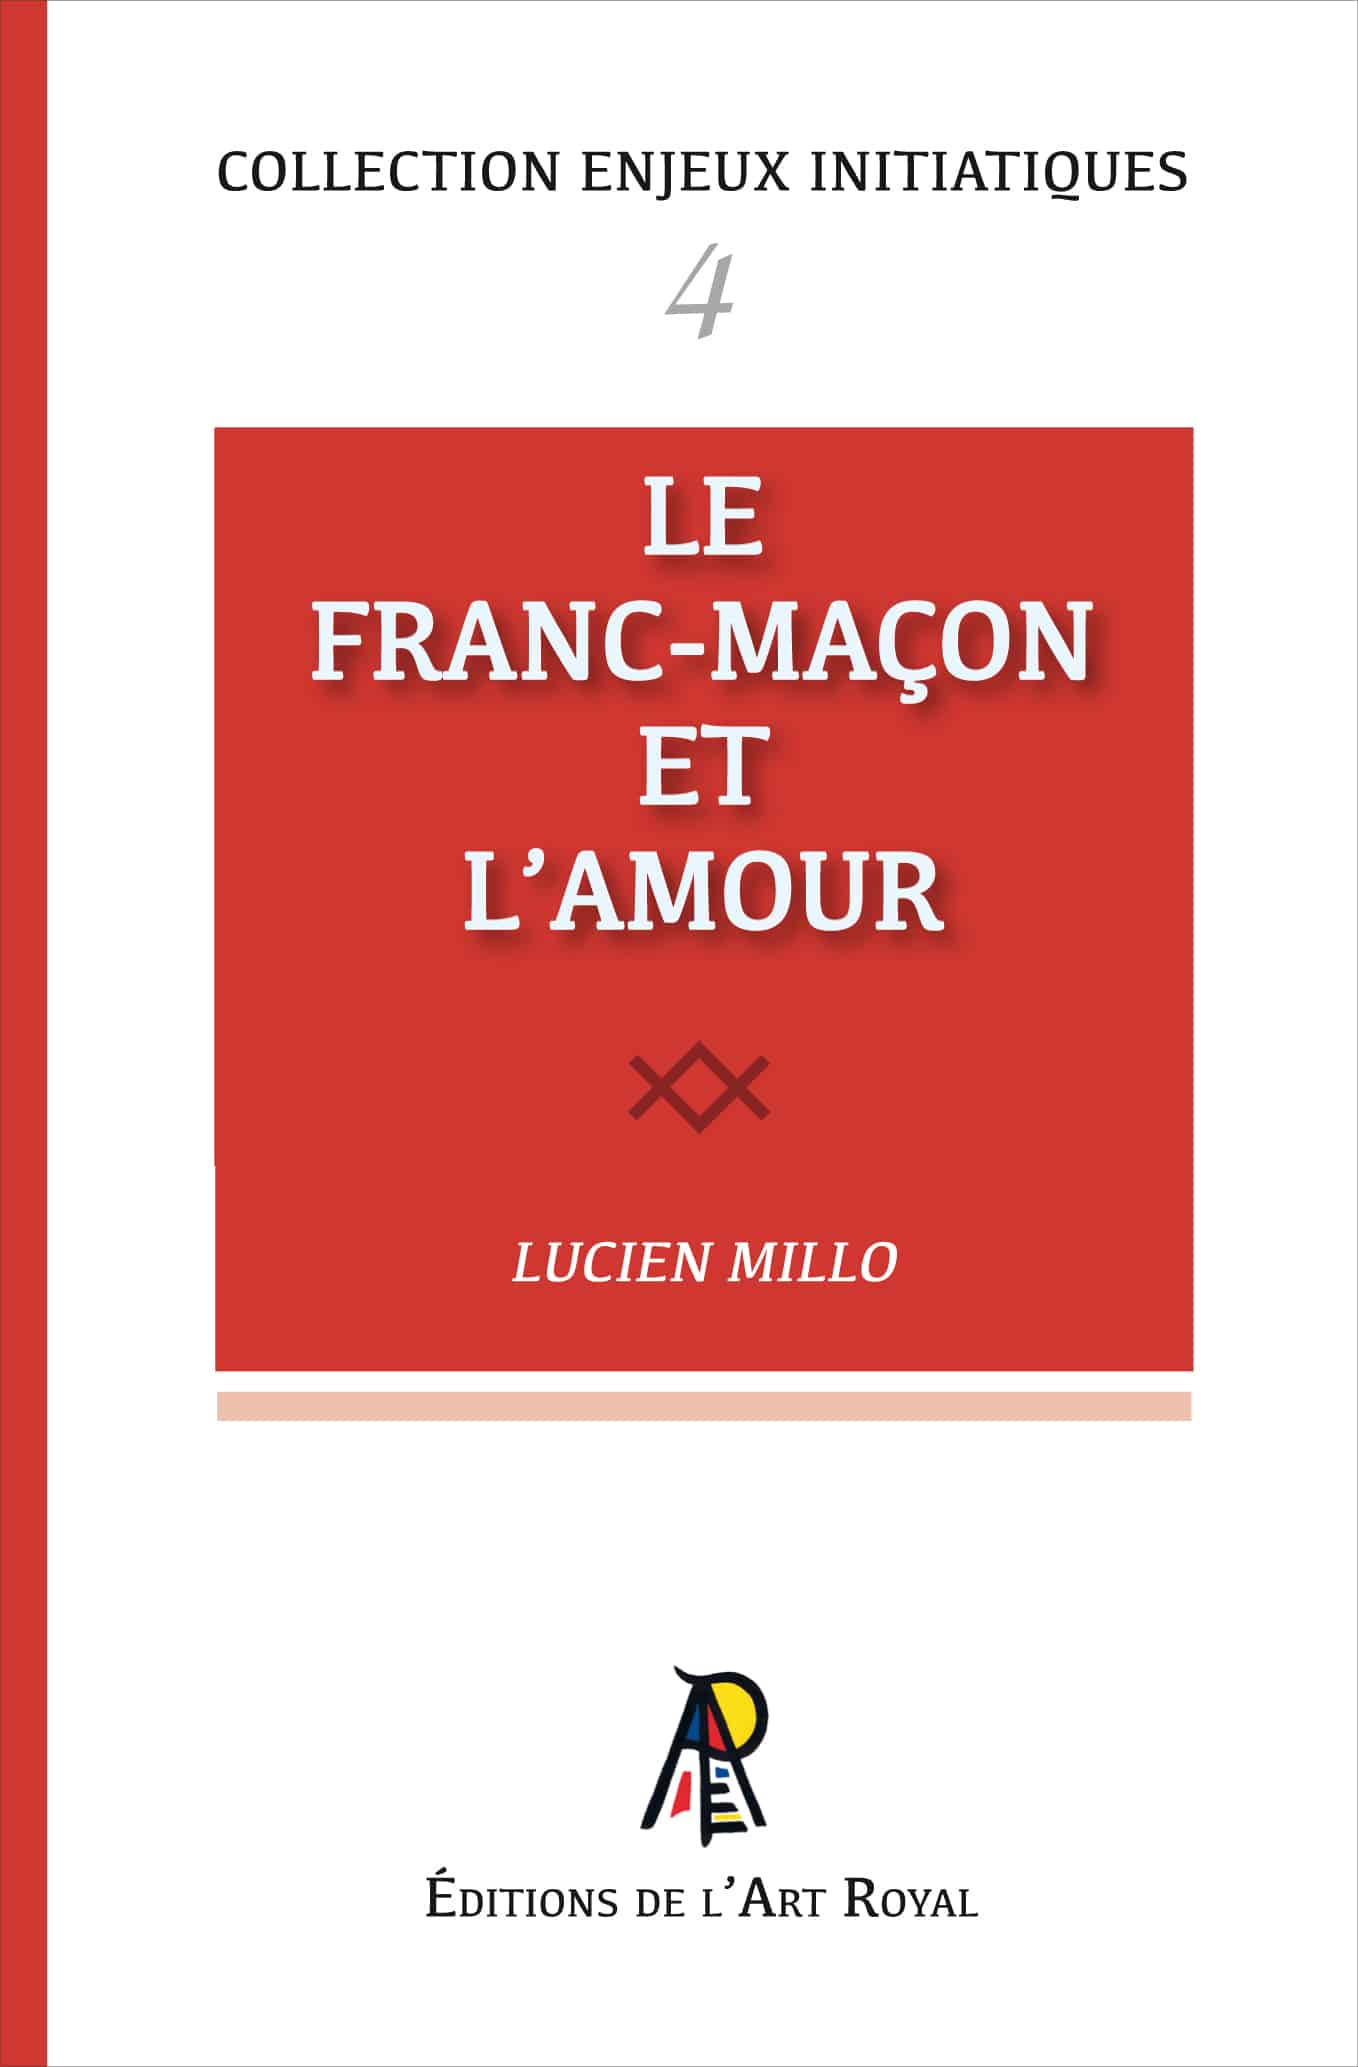 Le Franc-Maçon et l'amour, Lucien Millo